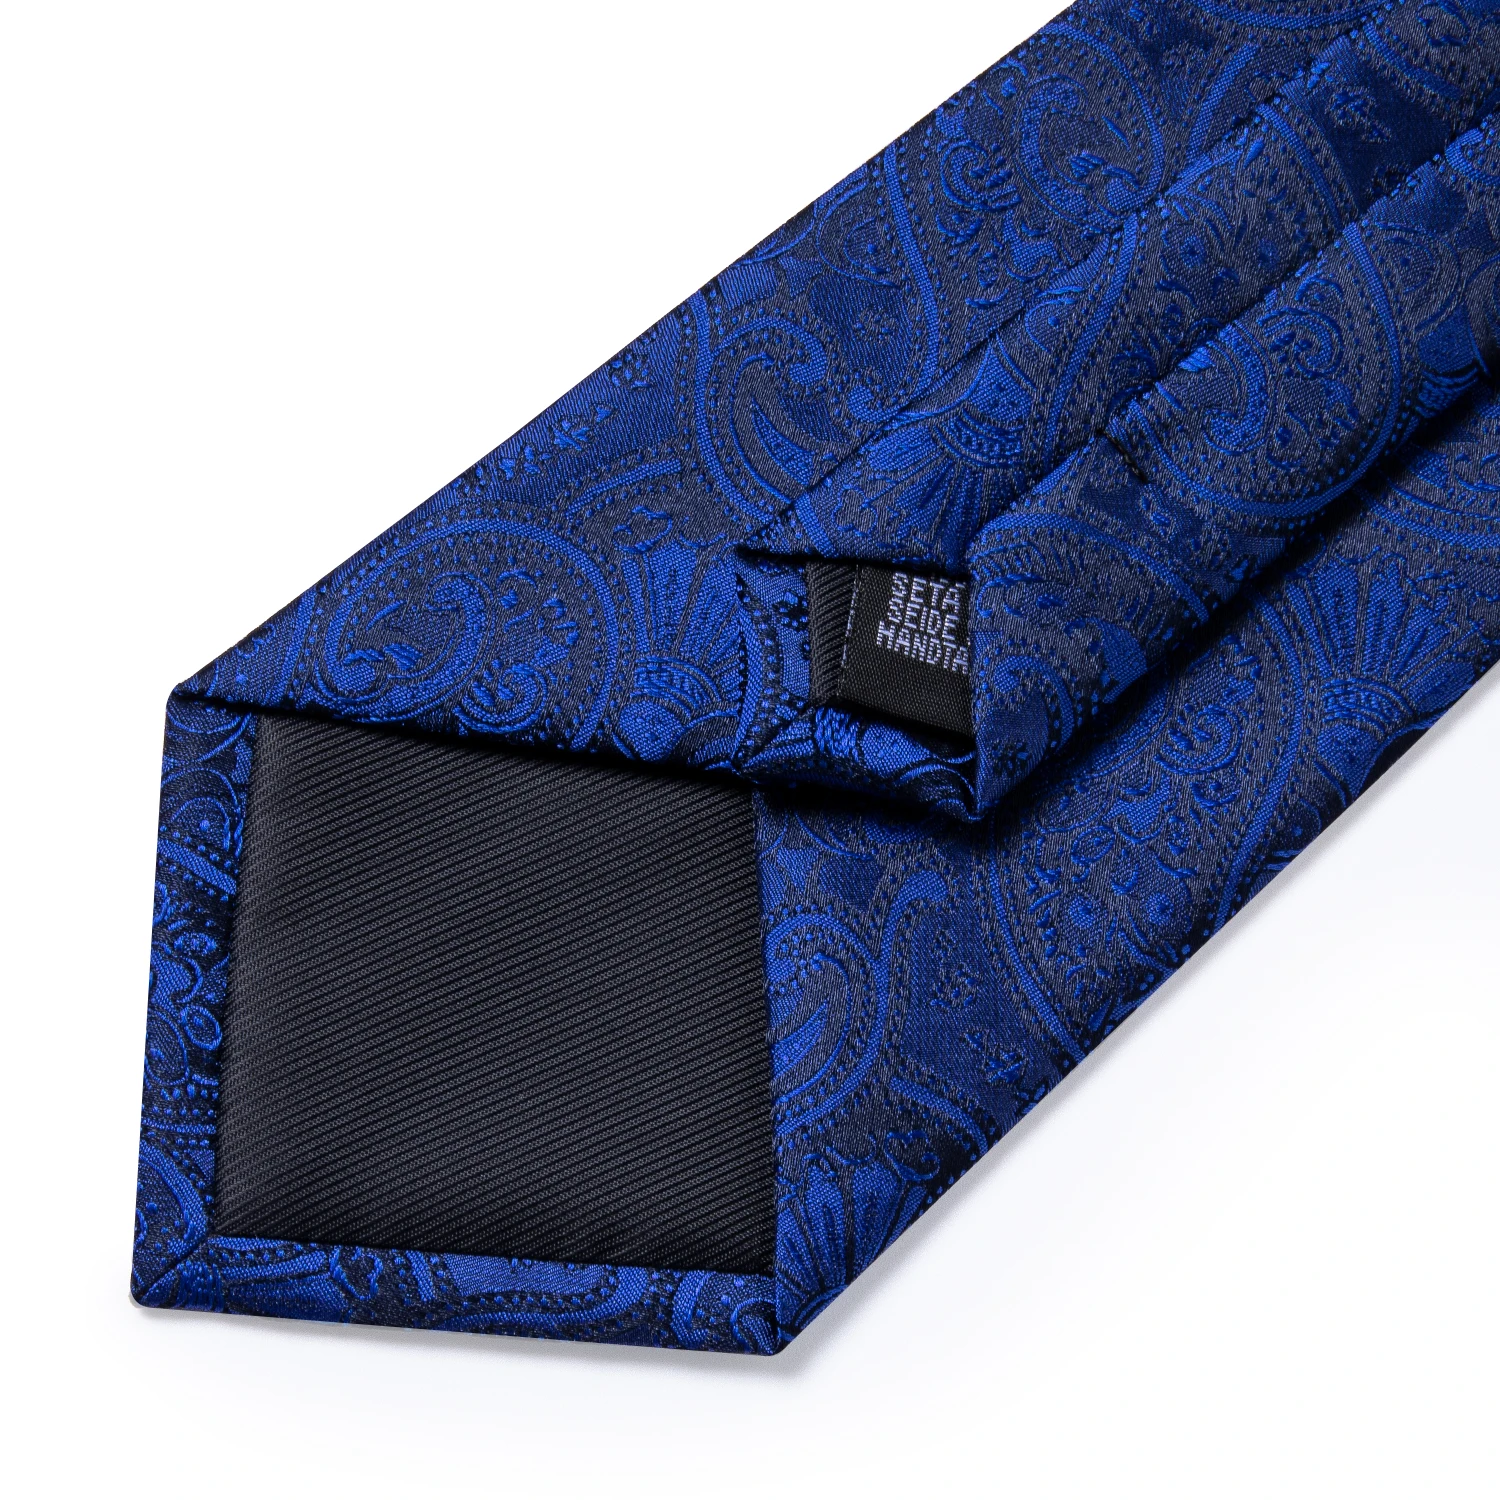 SJT-1435 DiBanGu Роскошный Синий Флора lMen Галстук Свадебная деловая вечеринка галстук набор Шелковый галстук, шейный платок и запонки галстук